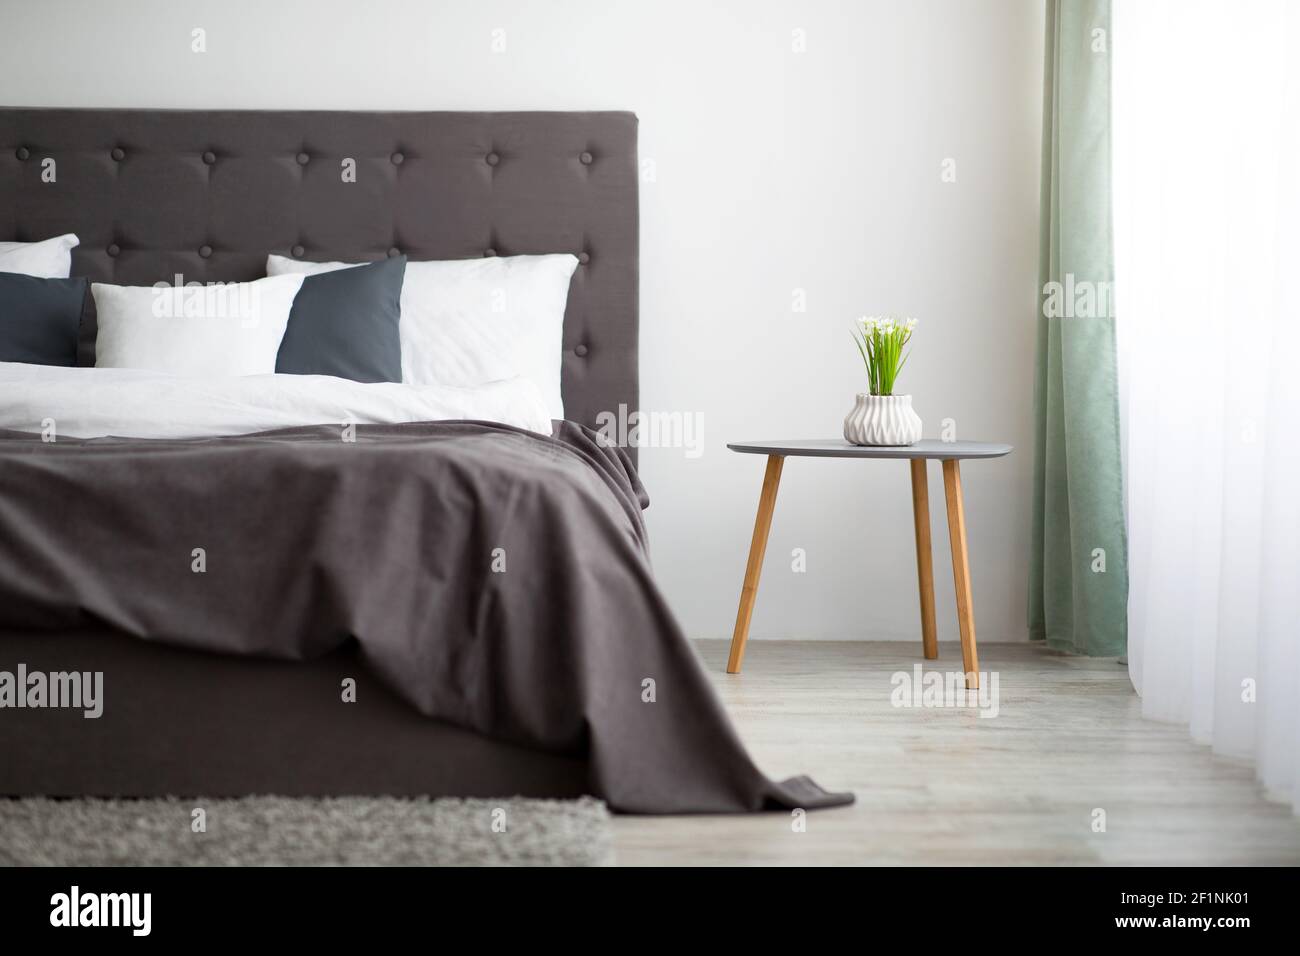 Moderner Stil und modisches Design im Inneren der Wohnung. Bett für zwei Personen mit Decke und Kissen, Topfpflanze auf Tisch auf grauem Wandhintergrund, groß Stockfoto